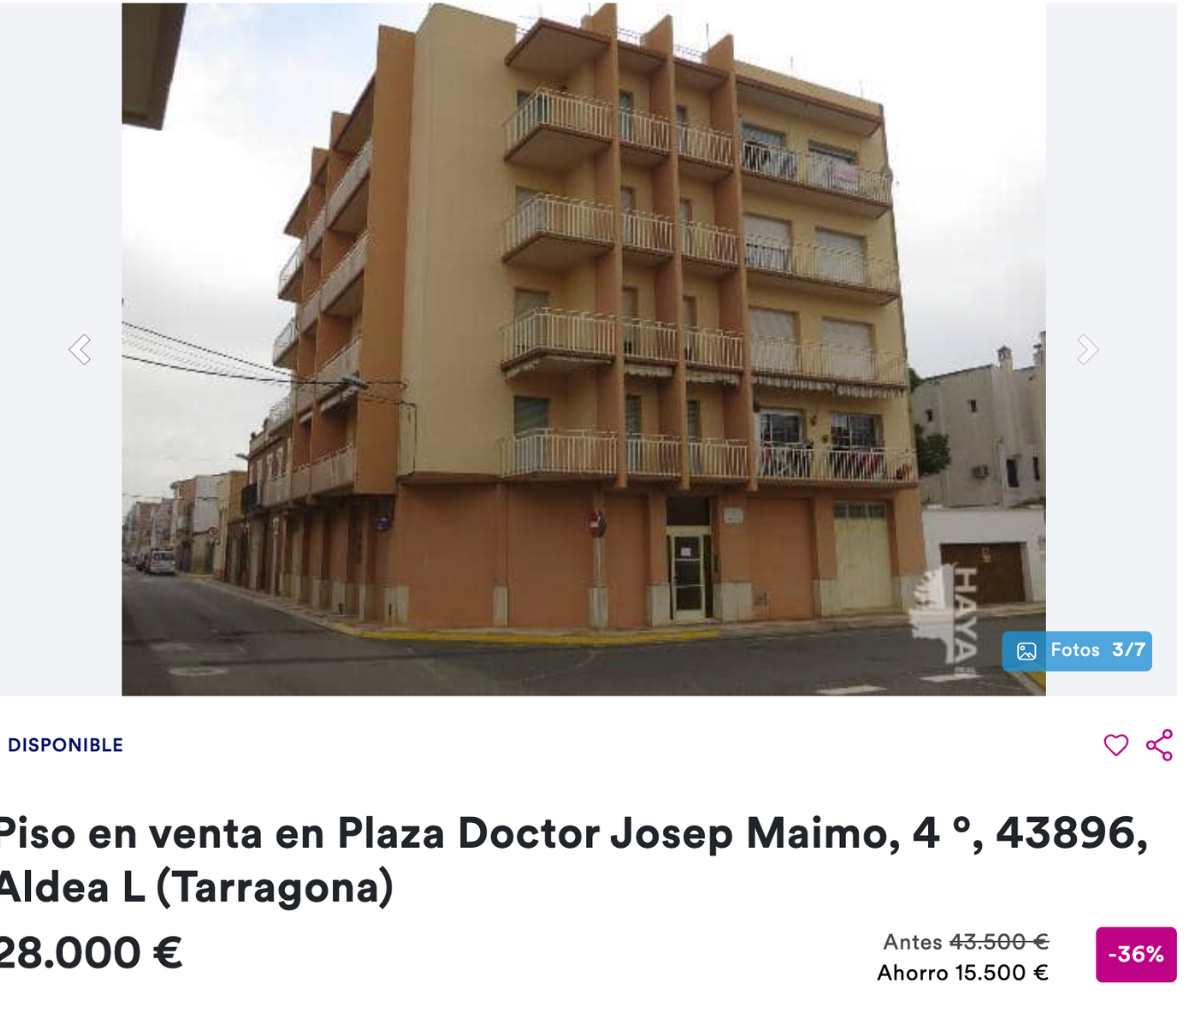 Piso en venta den l’Aldea (Tarragona) por un precio de 28.000 euros 